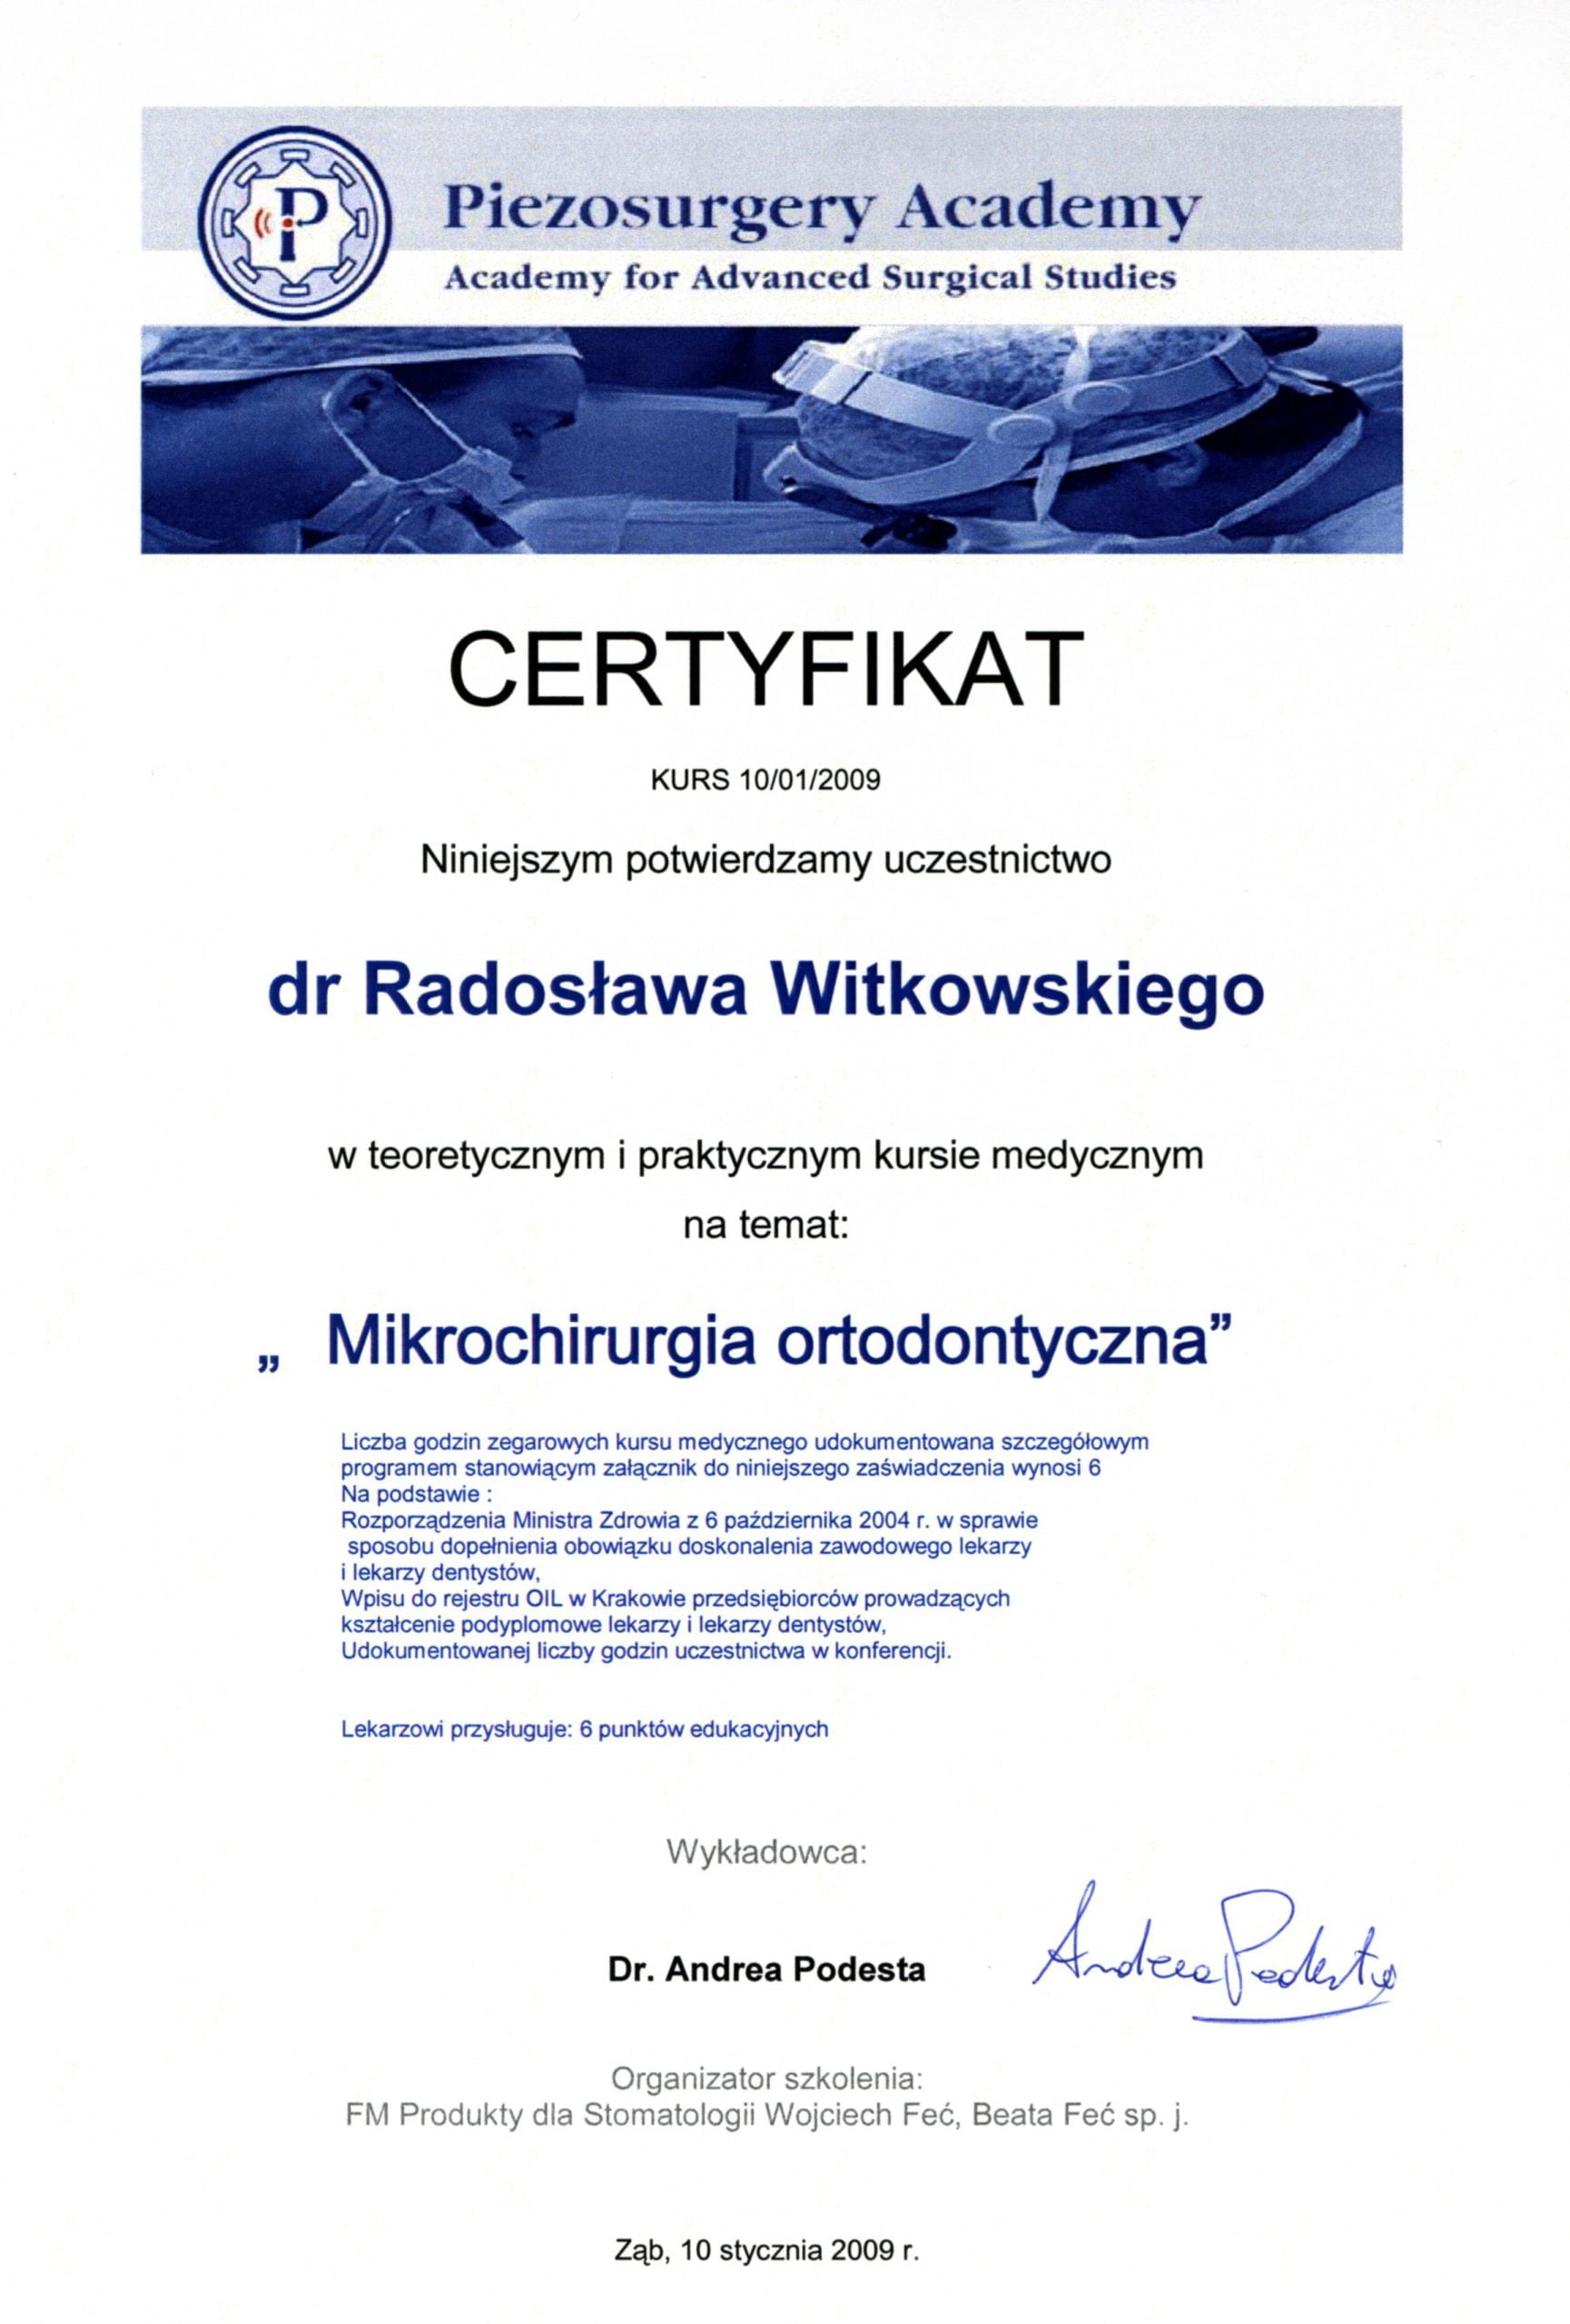 Radosław Witkowski certyfikat 73